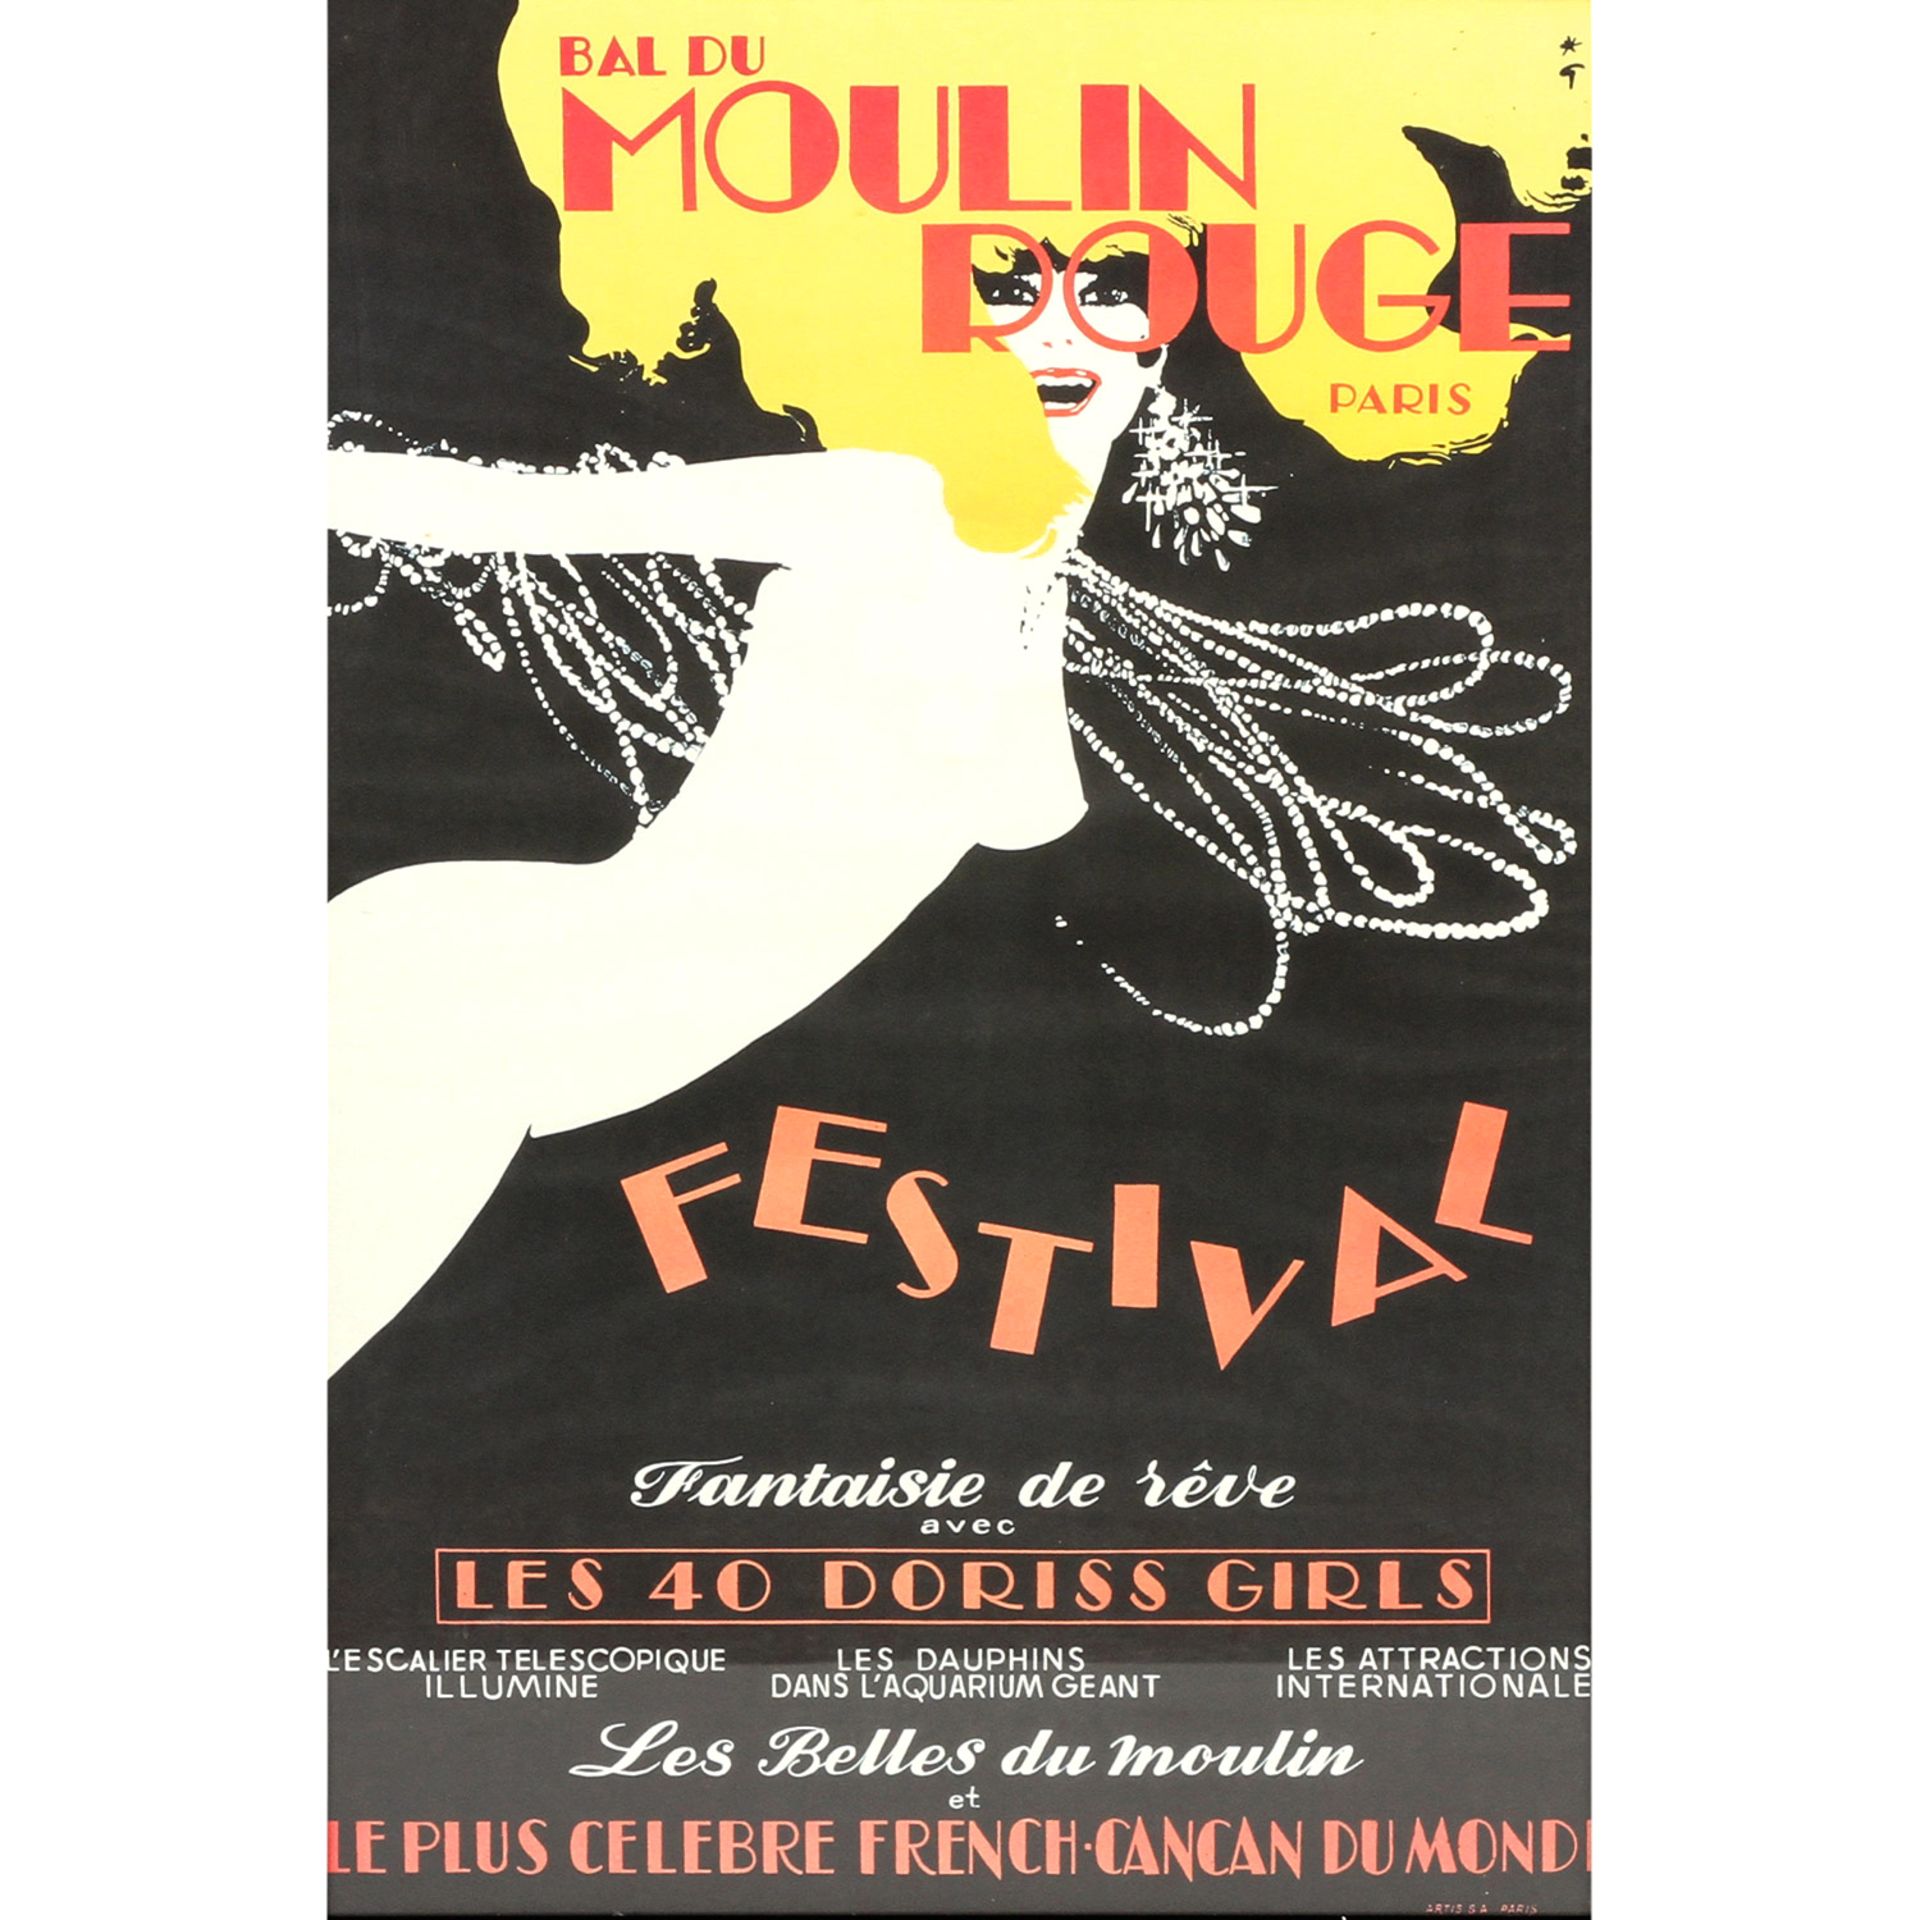 Plakat zur Show "BAL DU MOULIN ROUGE - FESTIVAL", Paris, 1973, Entwurf RENÈ GRUAU,Offset, Ed.